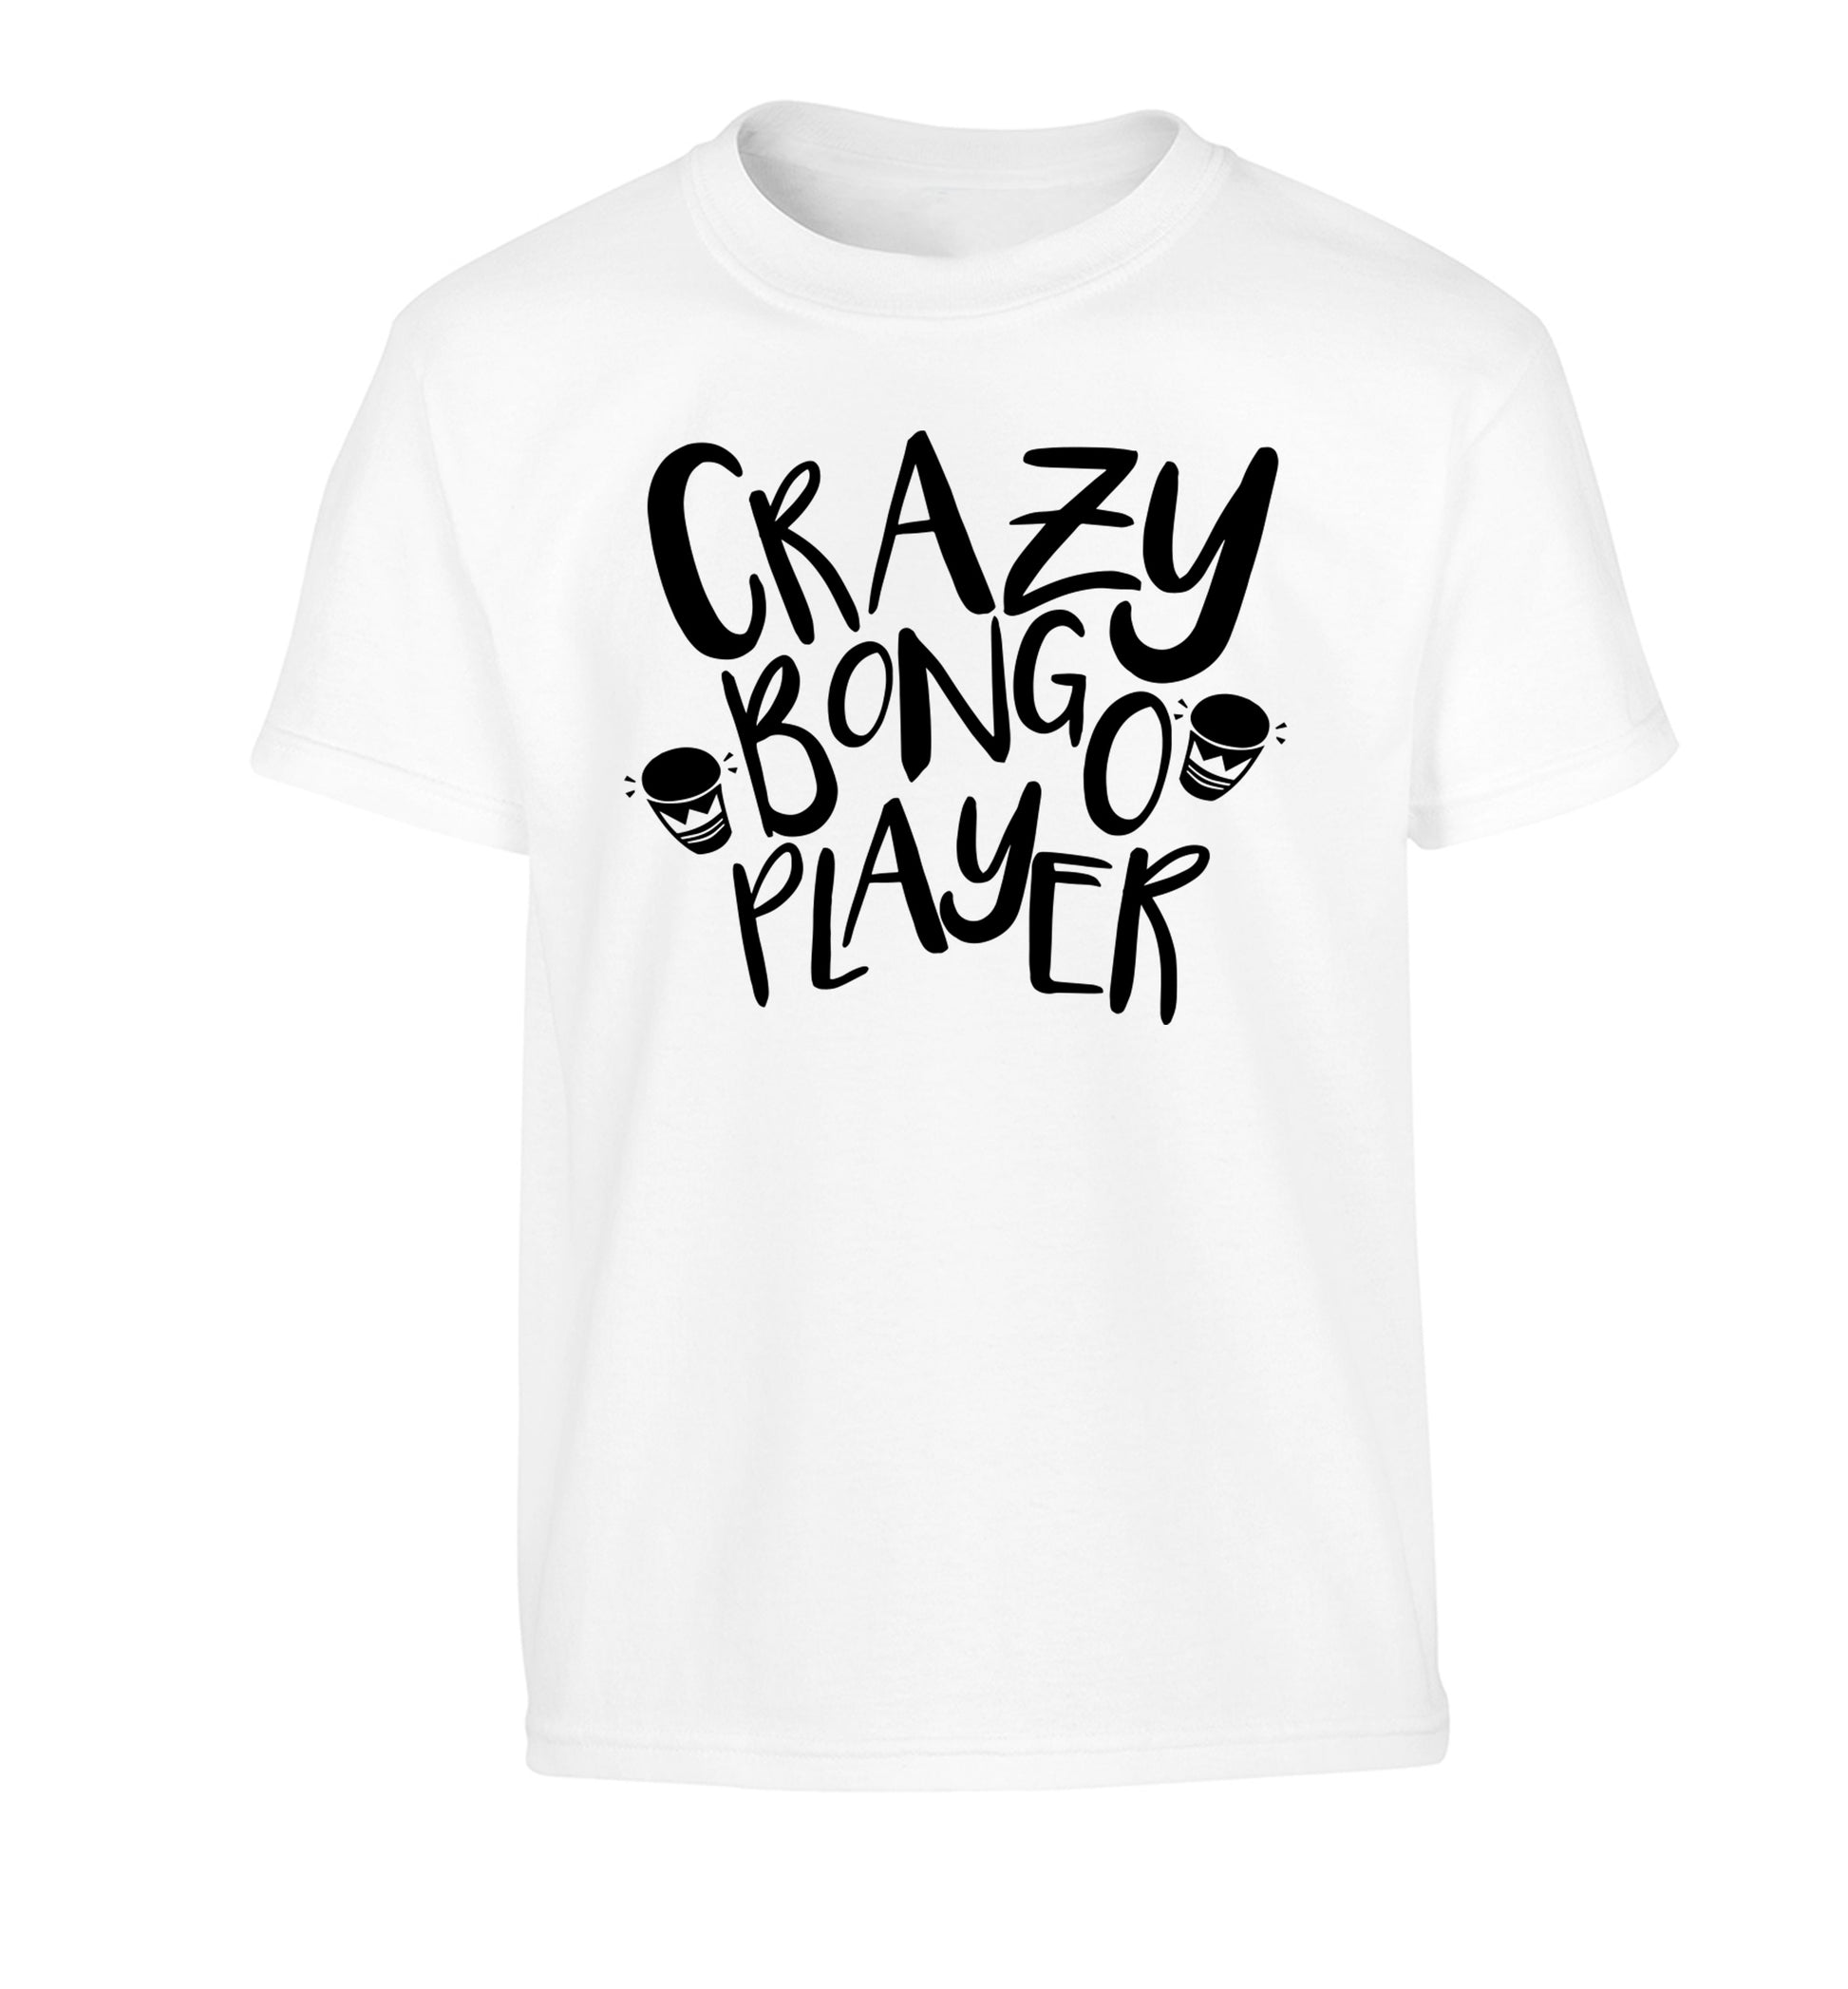 Crazy bongo player Children's white Tshirt 12-14 Years